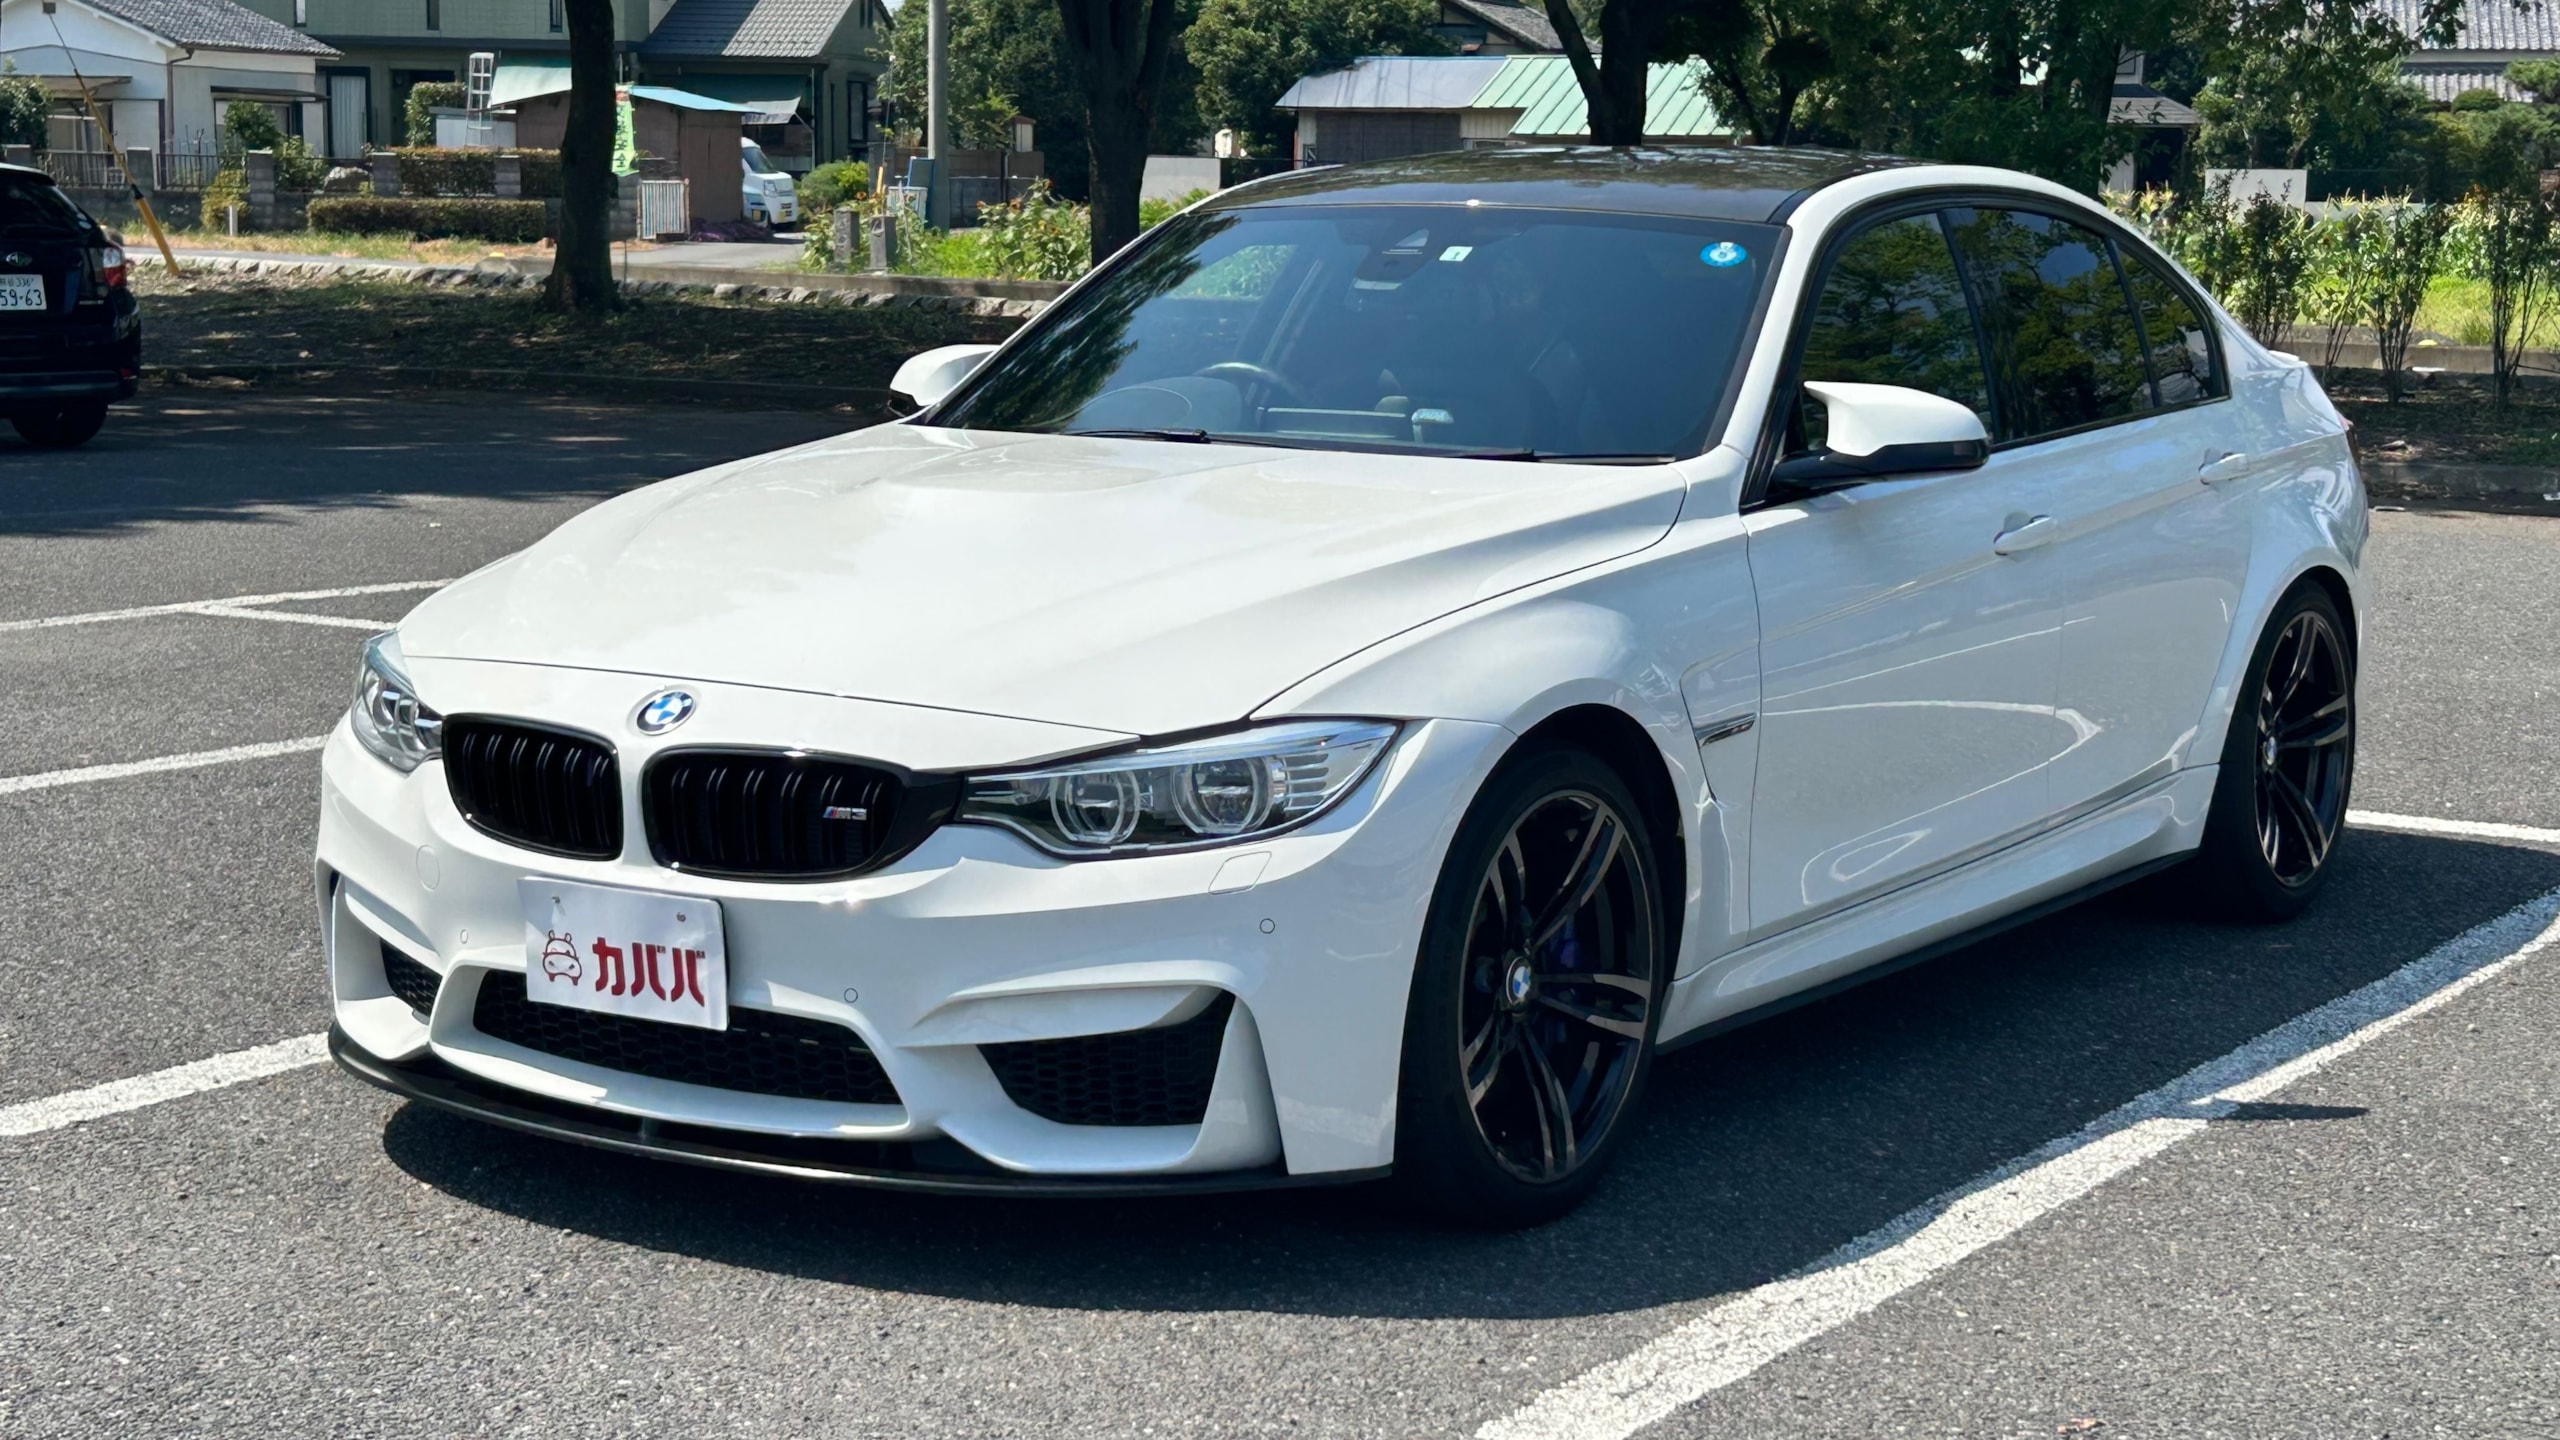 M3 セダン(BMW)2015年式 590万円の中古車 - 自動車フリマ(車の